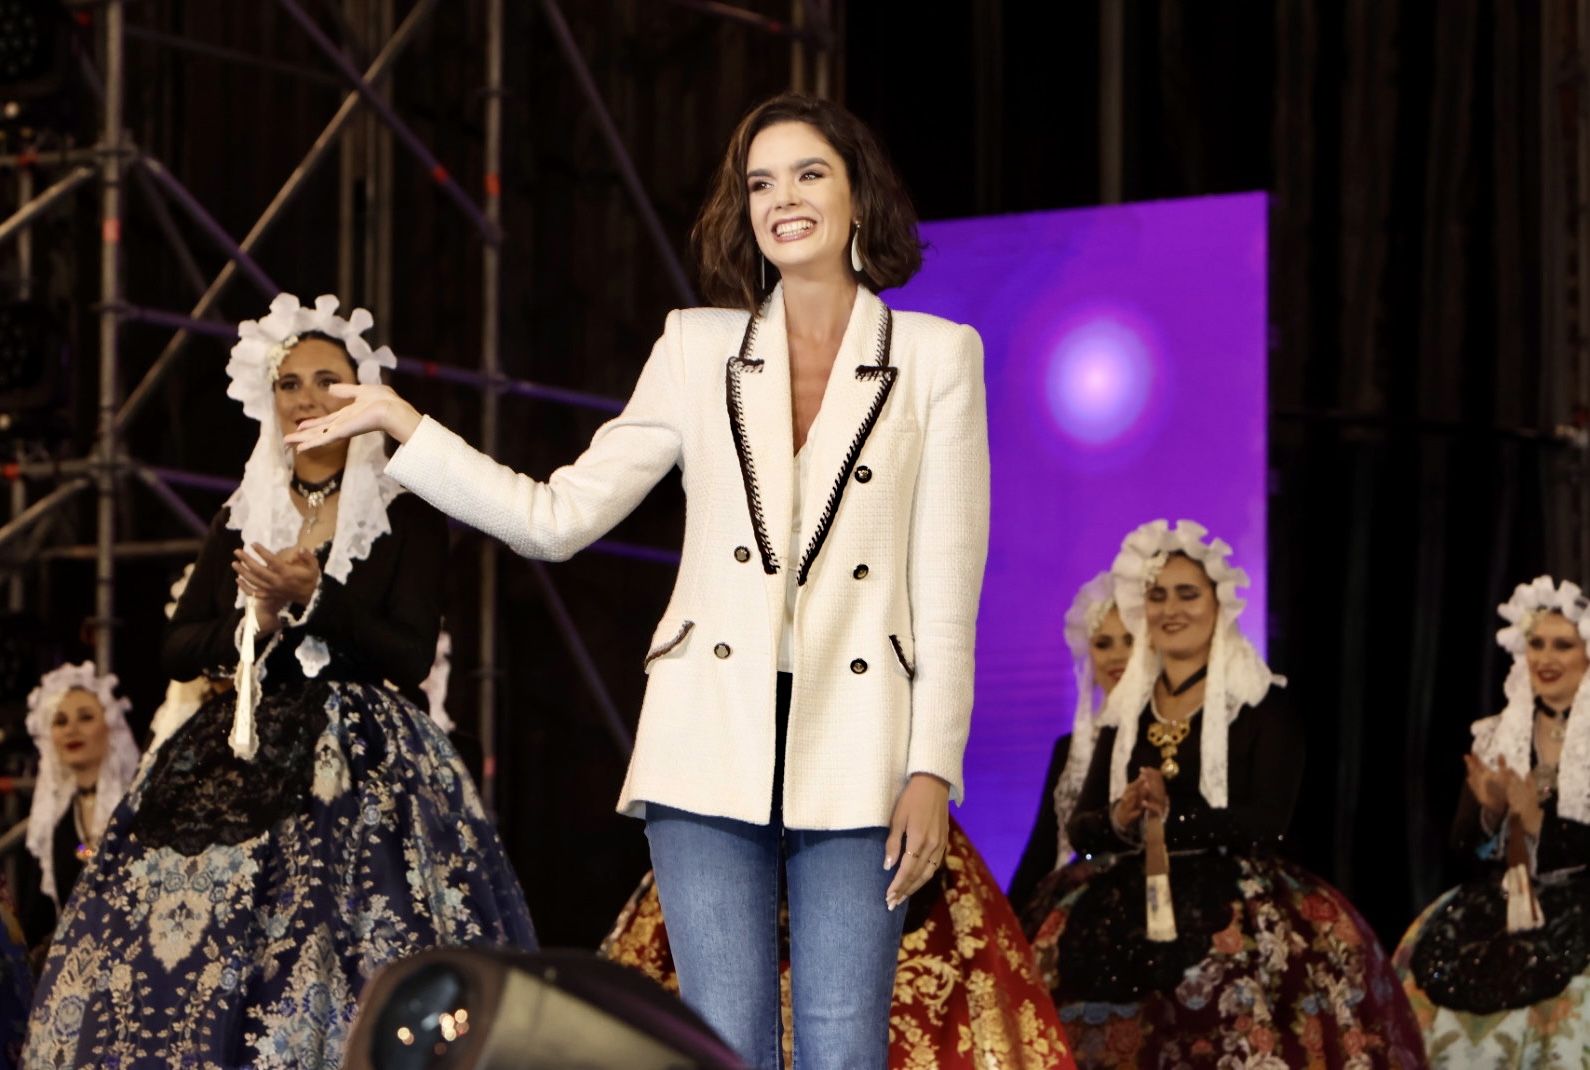 Ensayo de las candidatas adultas a Bellea del Foc con traje de novia alicantina en la Plaza de Toros de Alicante